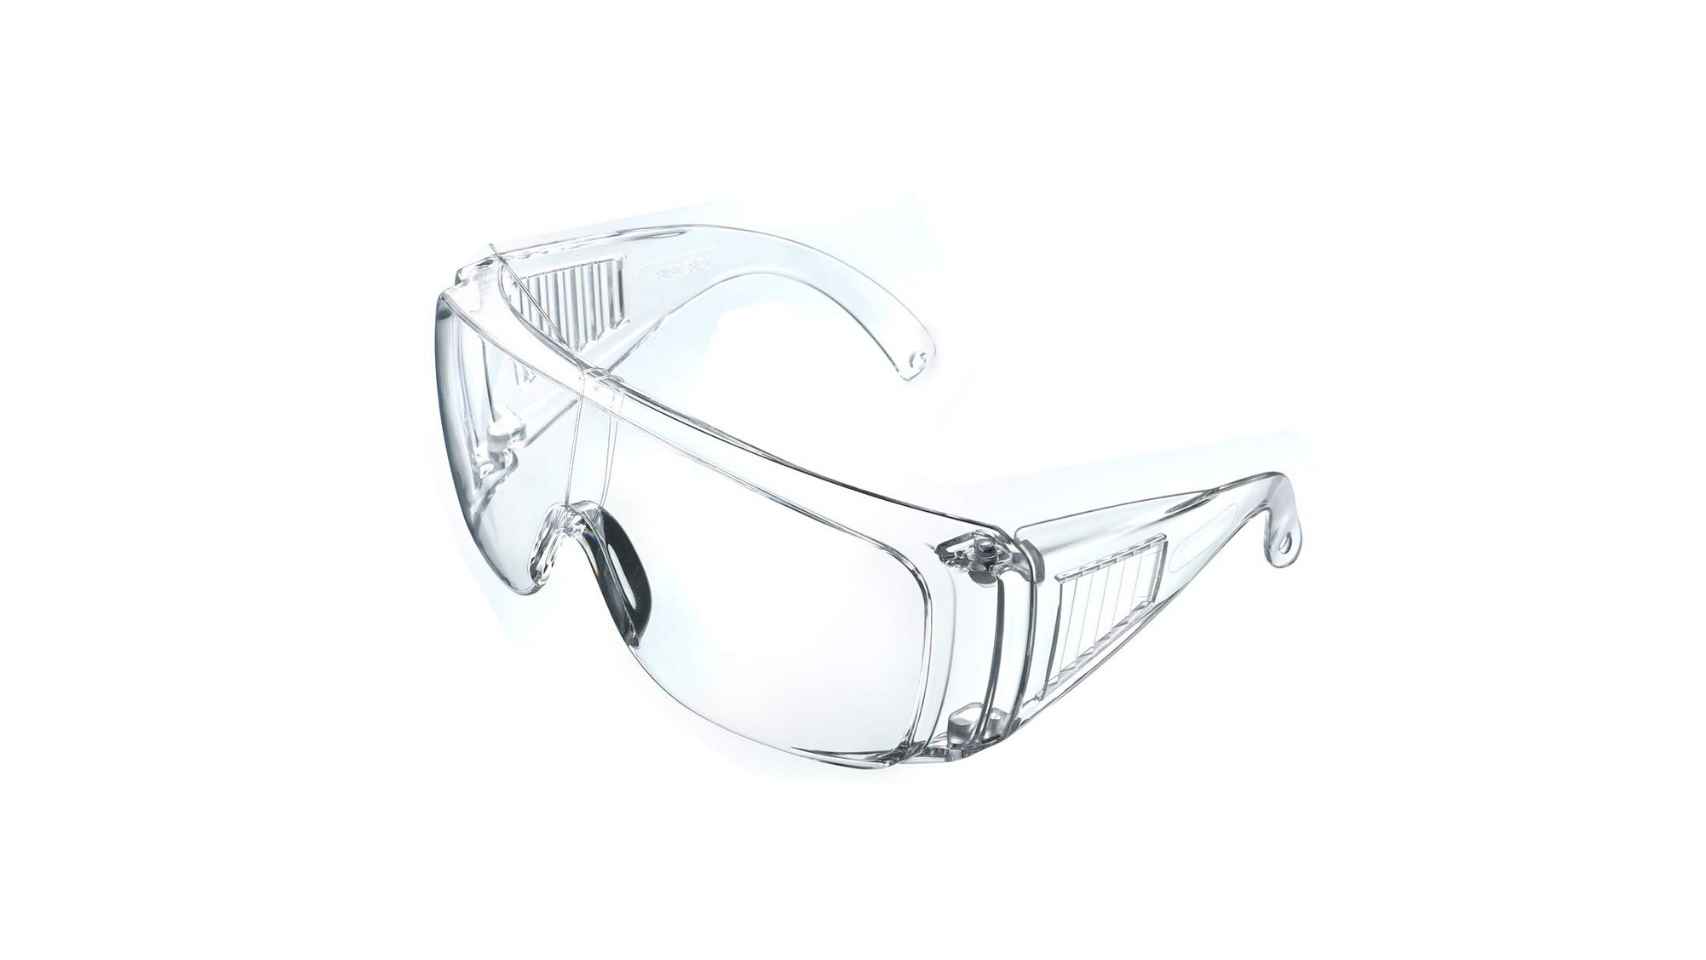 Nitras gafas de protección Vision protect OTG protección laboral claramente para gafas 